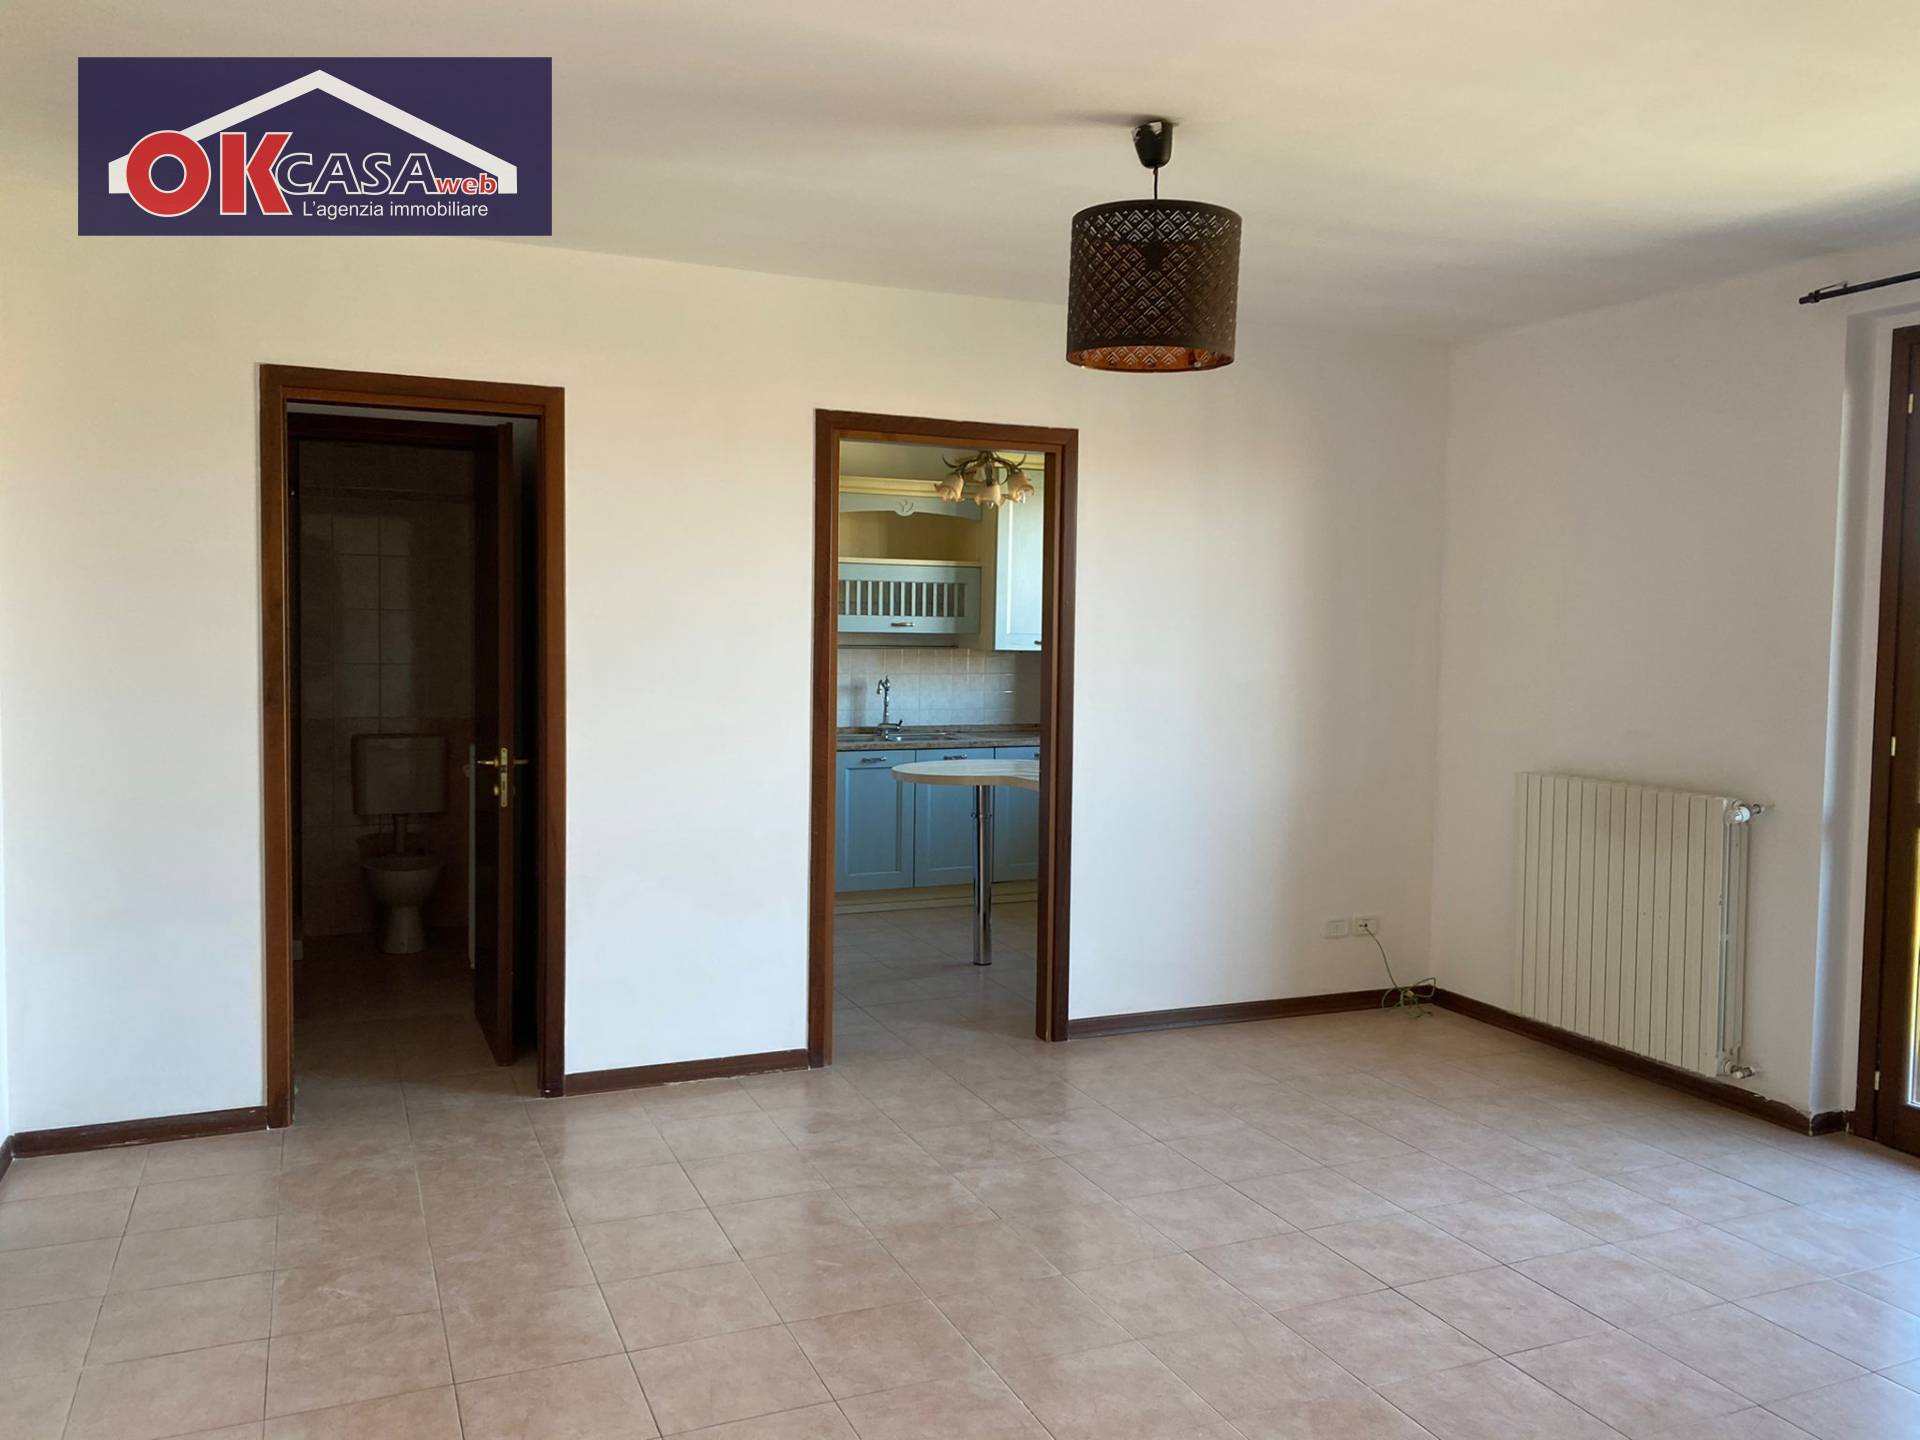 Appartamento in vendita a Gradisca d'Isonzo, 5 locali, prezzo € 125.000 | CambioCasa.it